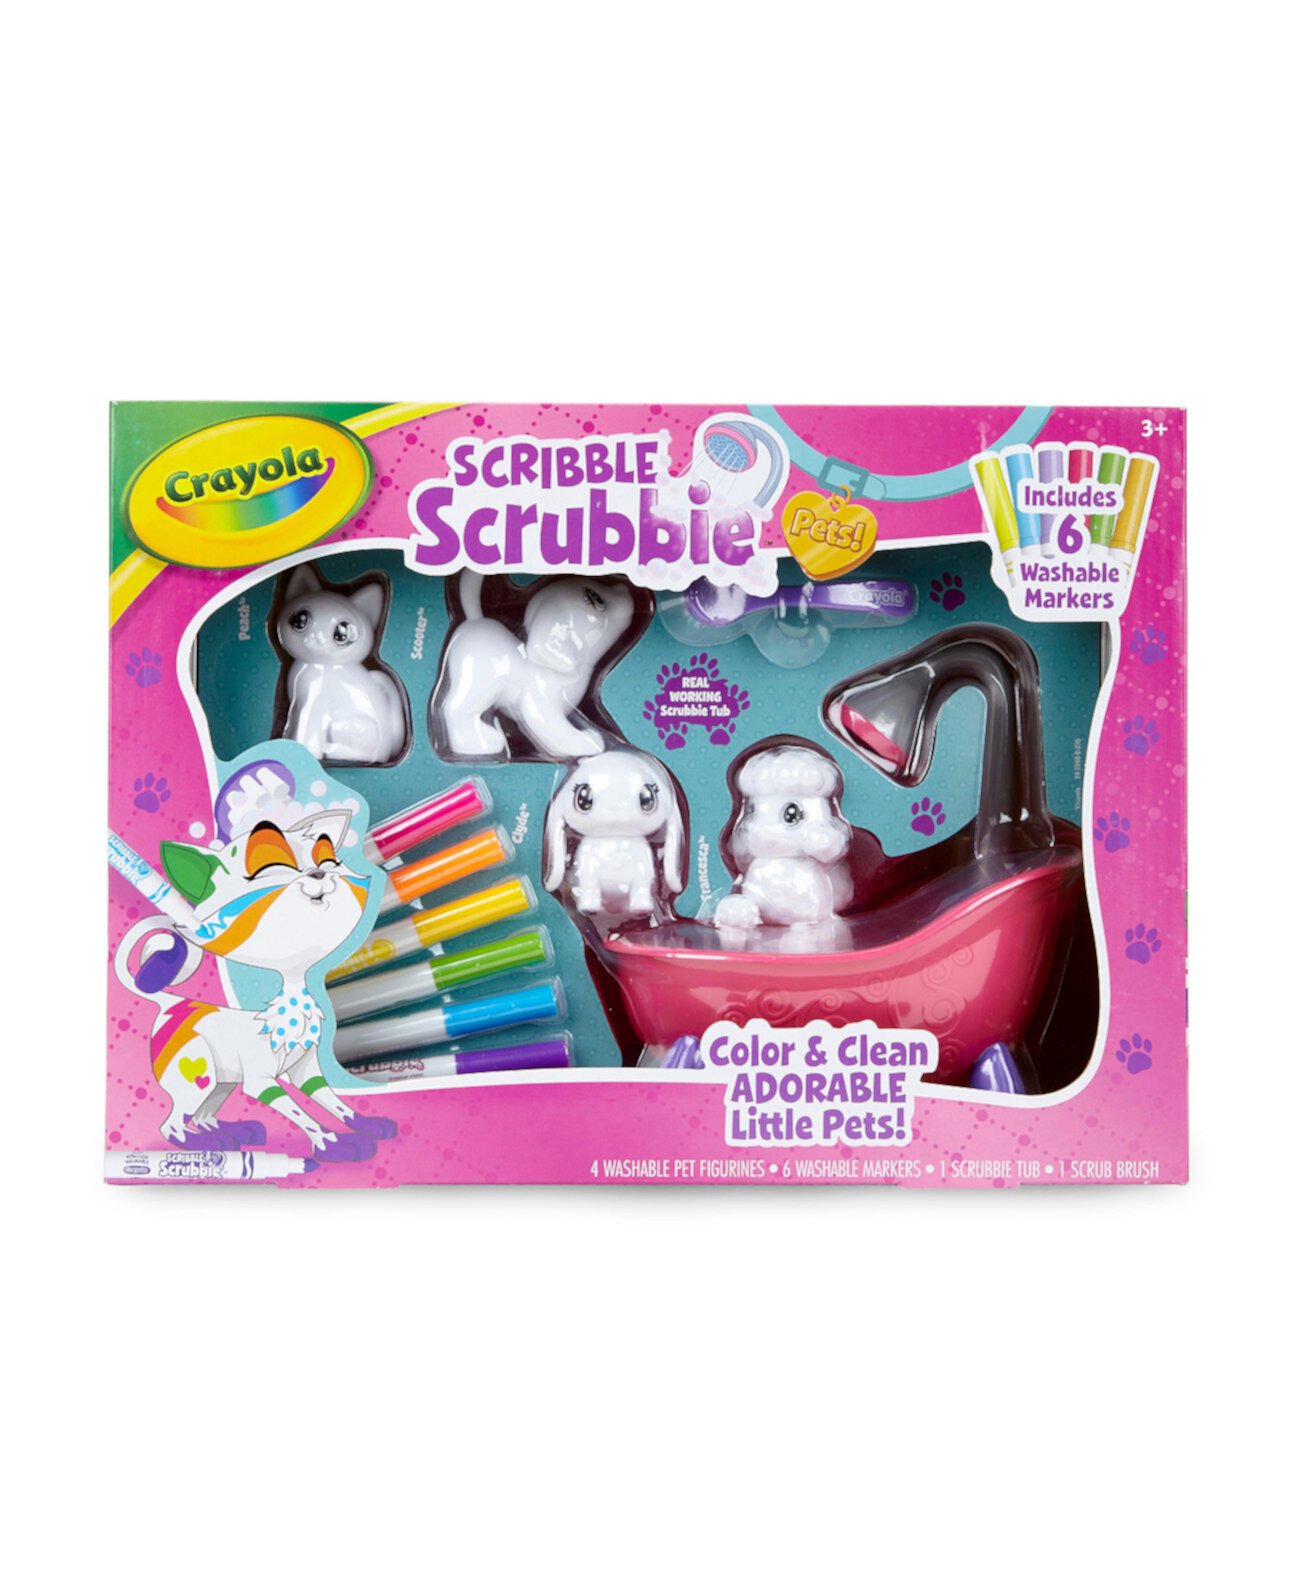 Scribble Scrubbie Pets Scrub Tub Набор игрушек для животных, подарок для возраста 3+ Crayola